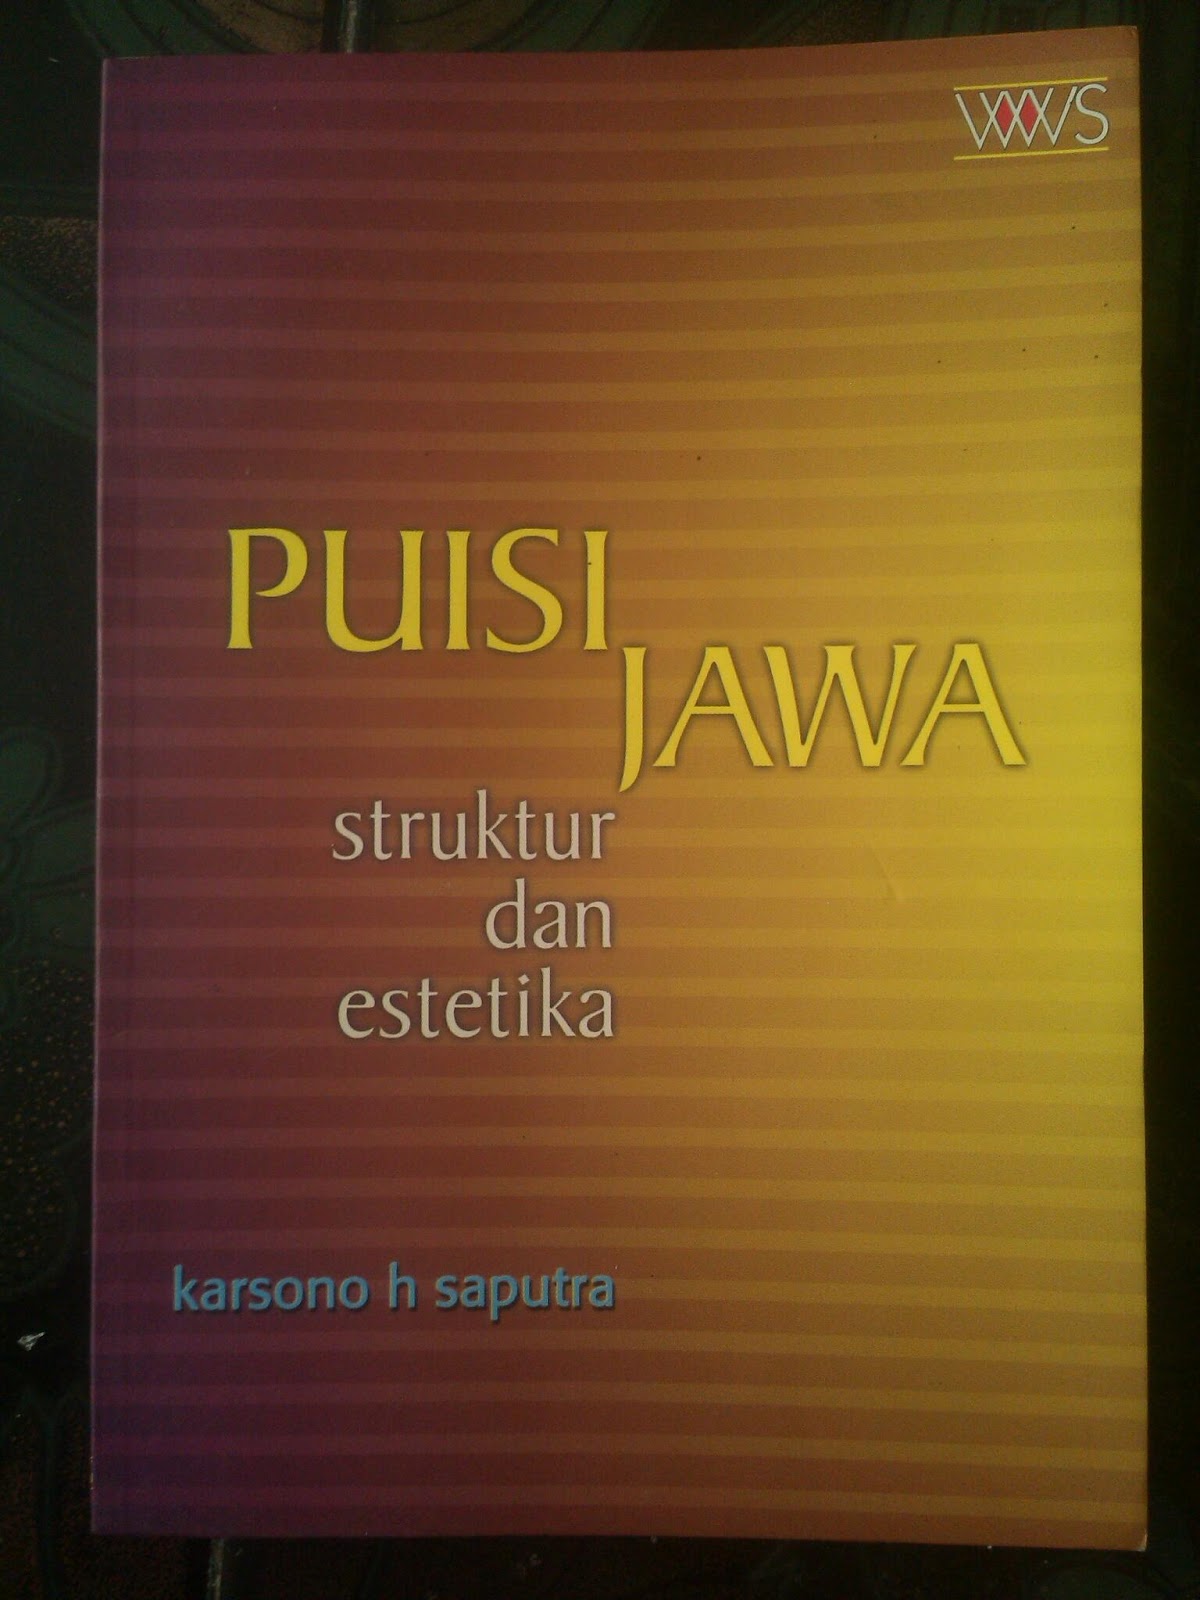 Toko Buku Jagad Ilmu: Puisi Jawa: Struktur dan Estetika